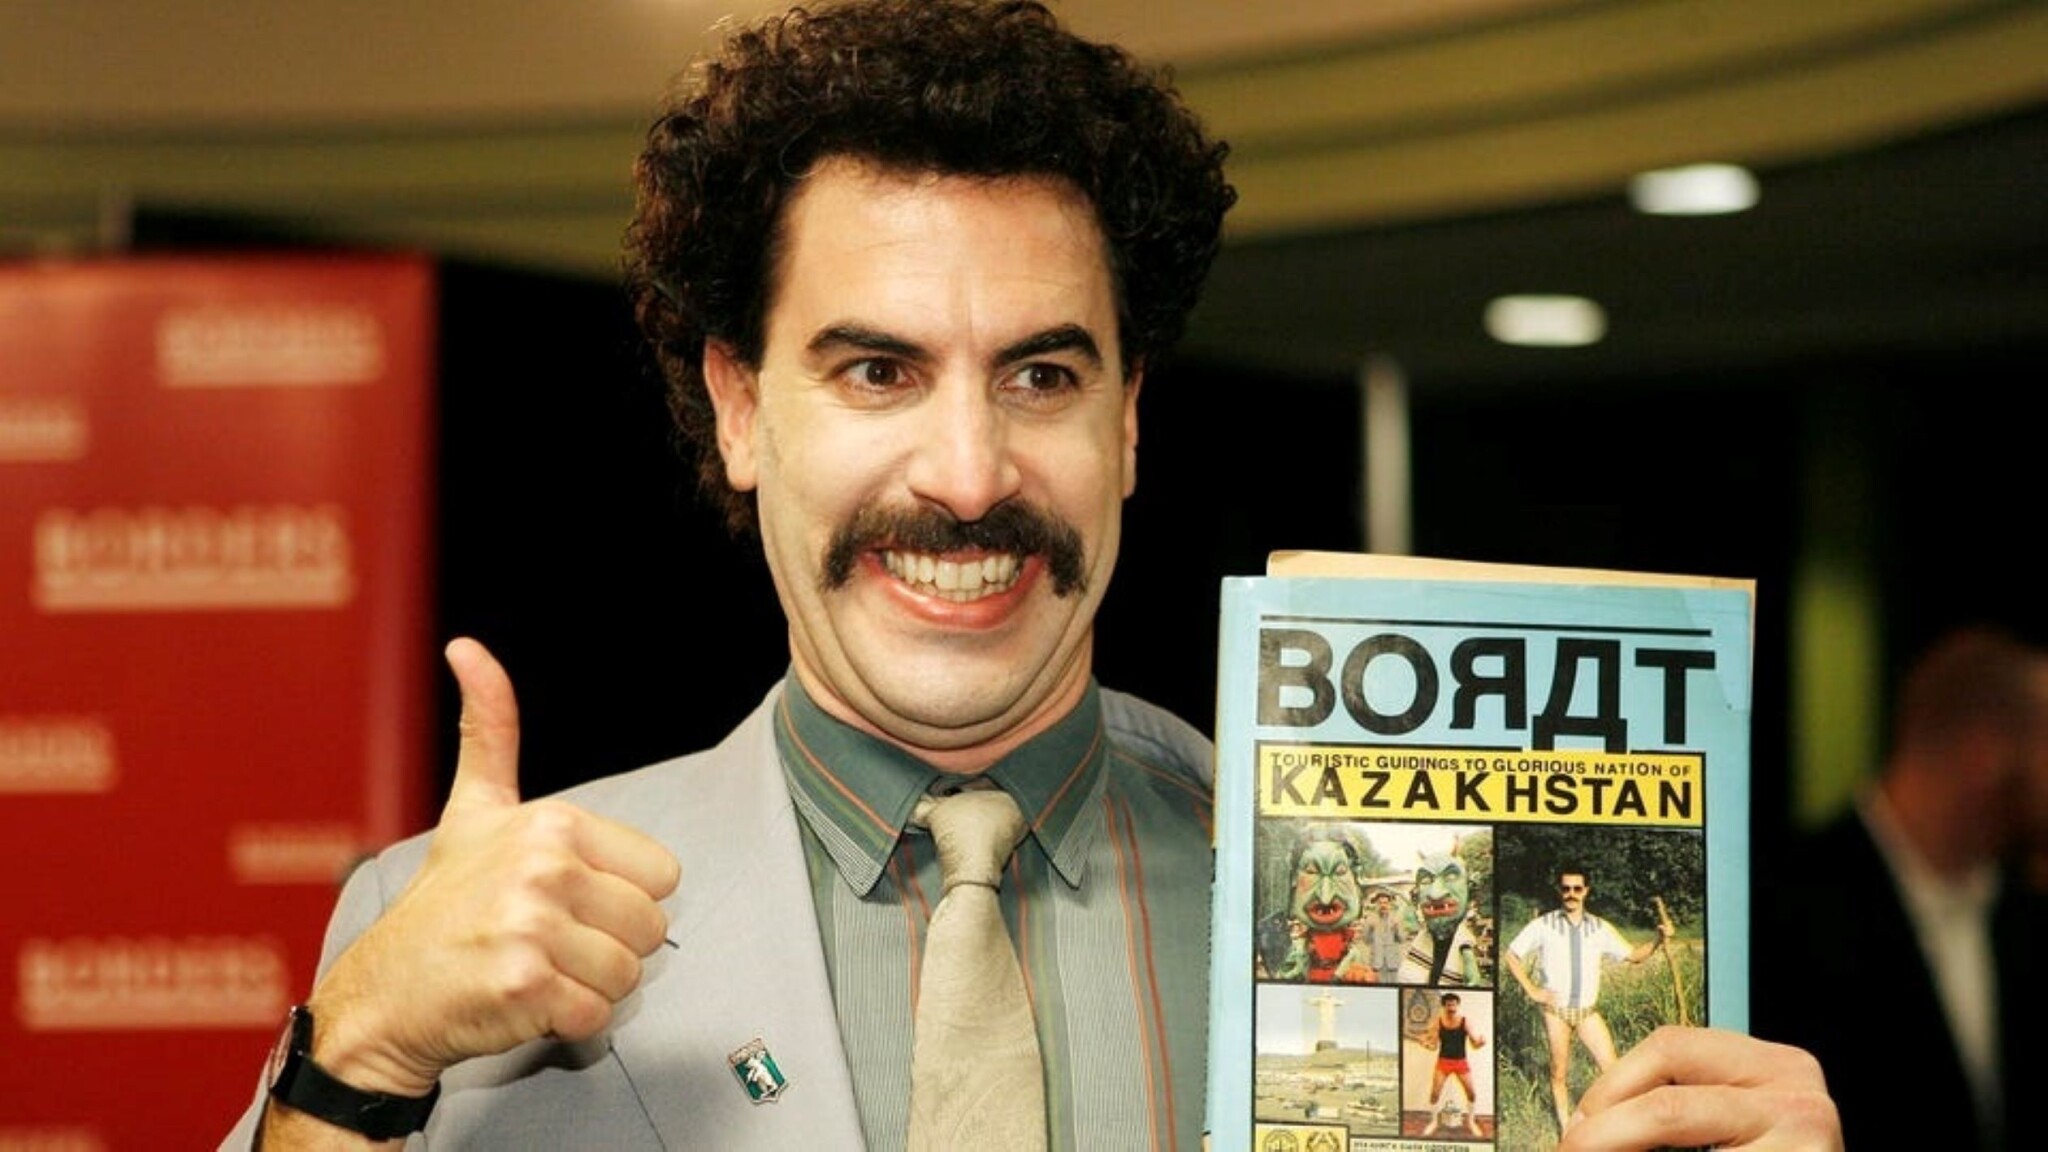 Boratovi tráva nevoní. Baron Cohen žaluje konopnou firmu o devět milionů dolarů